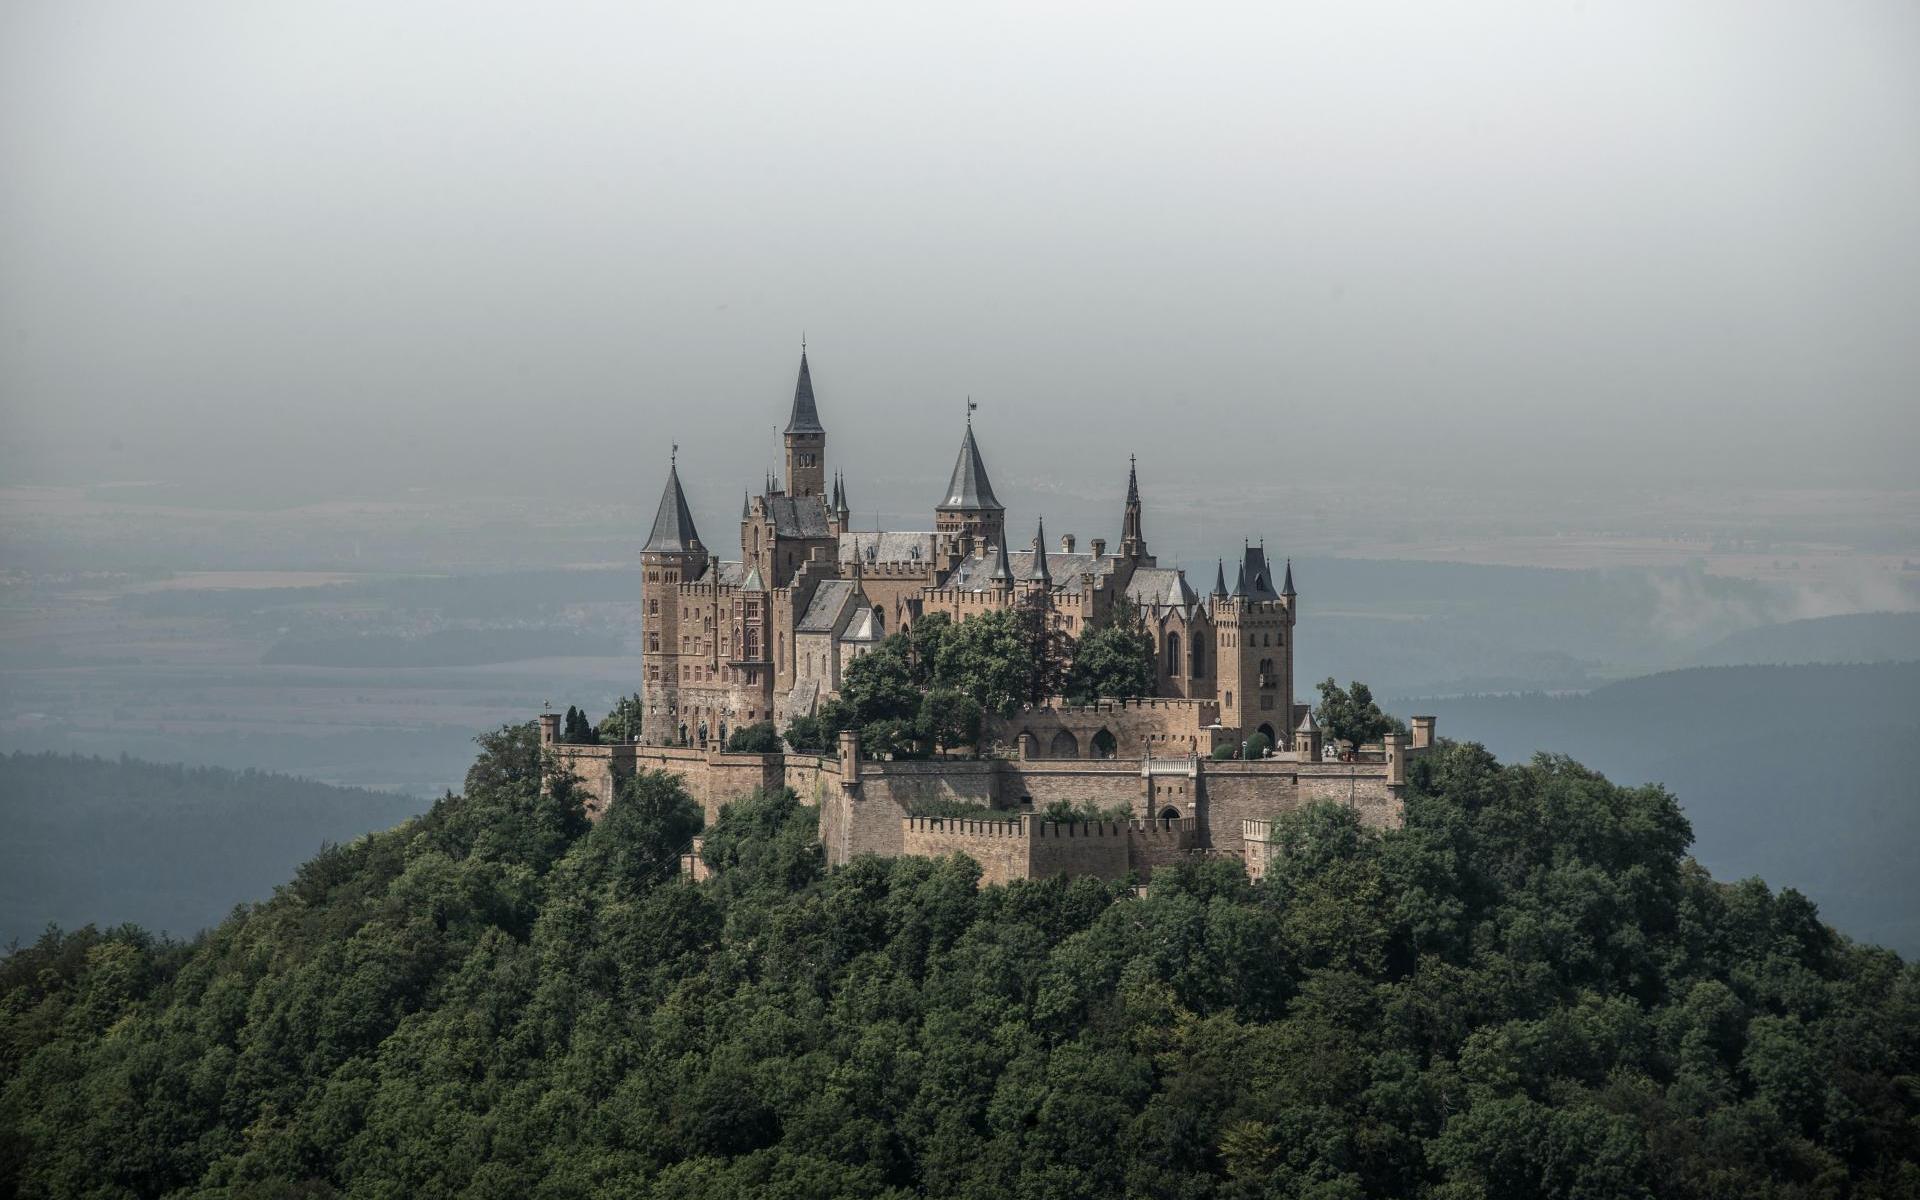 Burg Hohenzollern Süddeutschland Luftbild